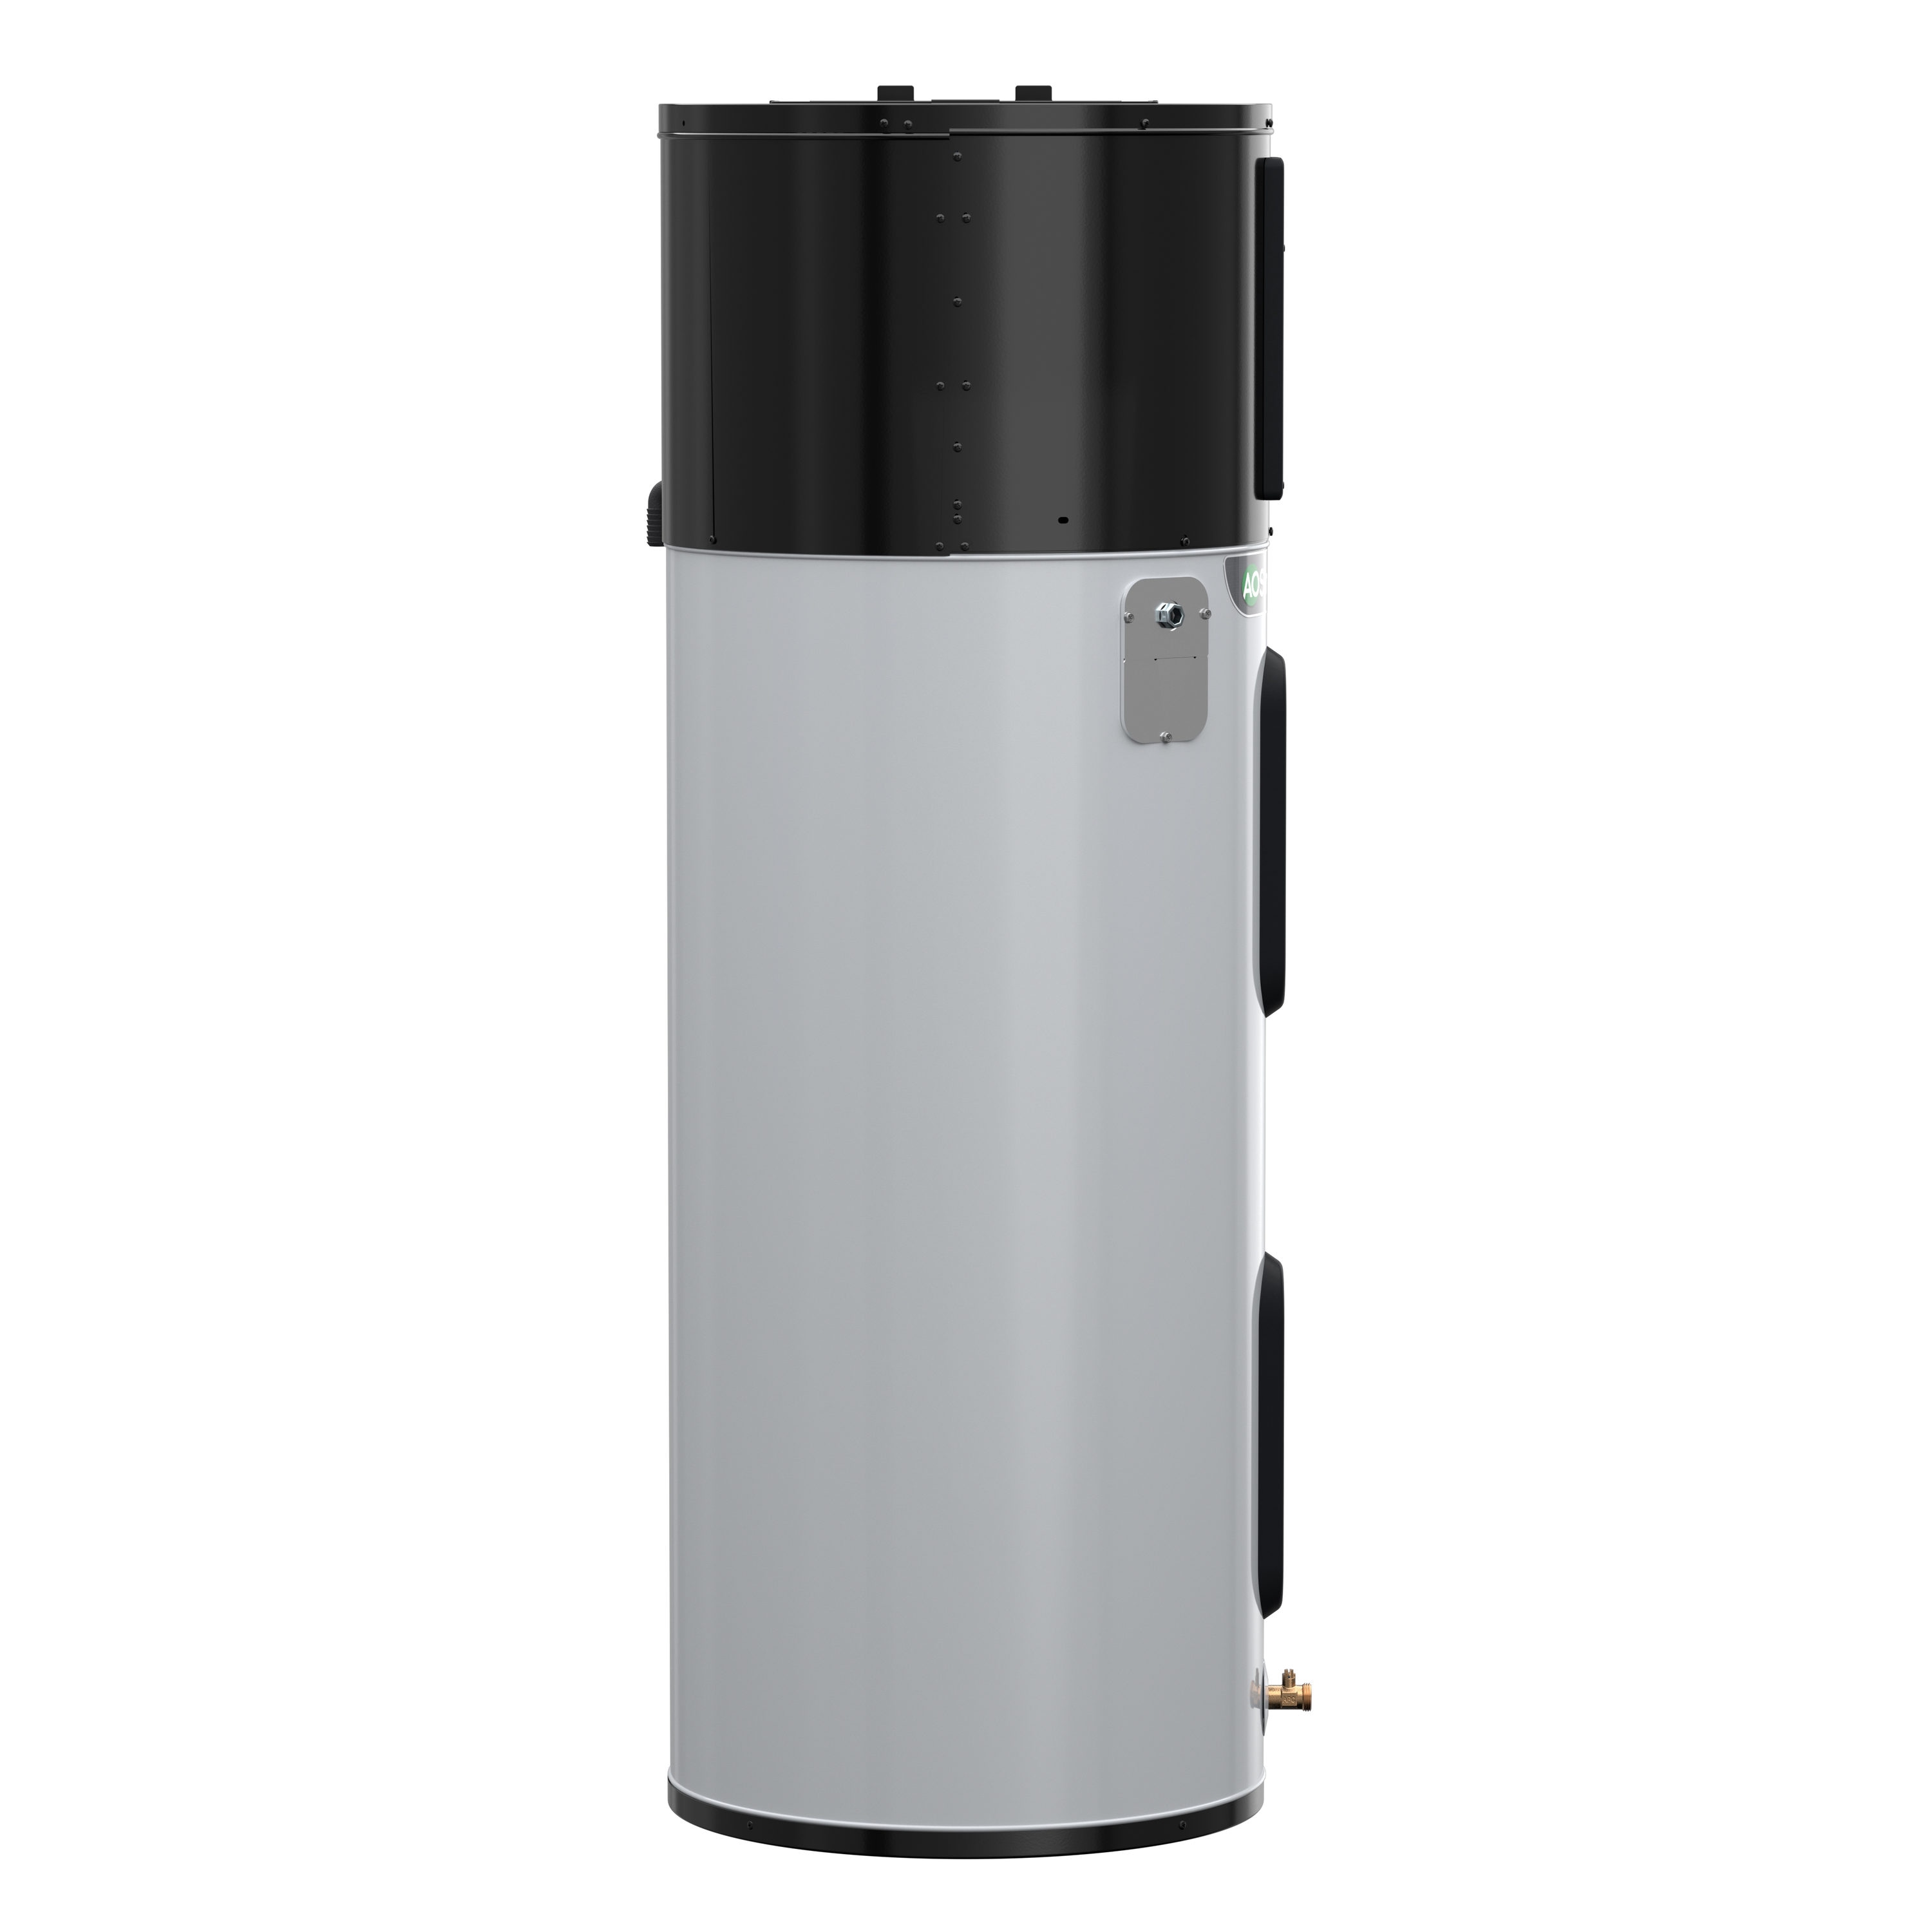 HPS10250H045DV - ProLine® XE 50 Gallon AL Smart Hybrid Electric Heat Pump Water  Heater with Anti-Leak Technology - 10 Year Warranty